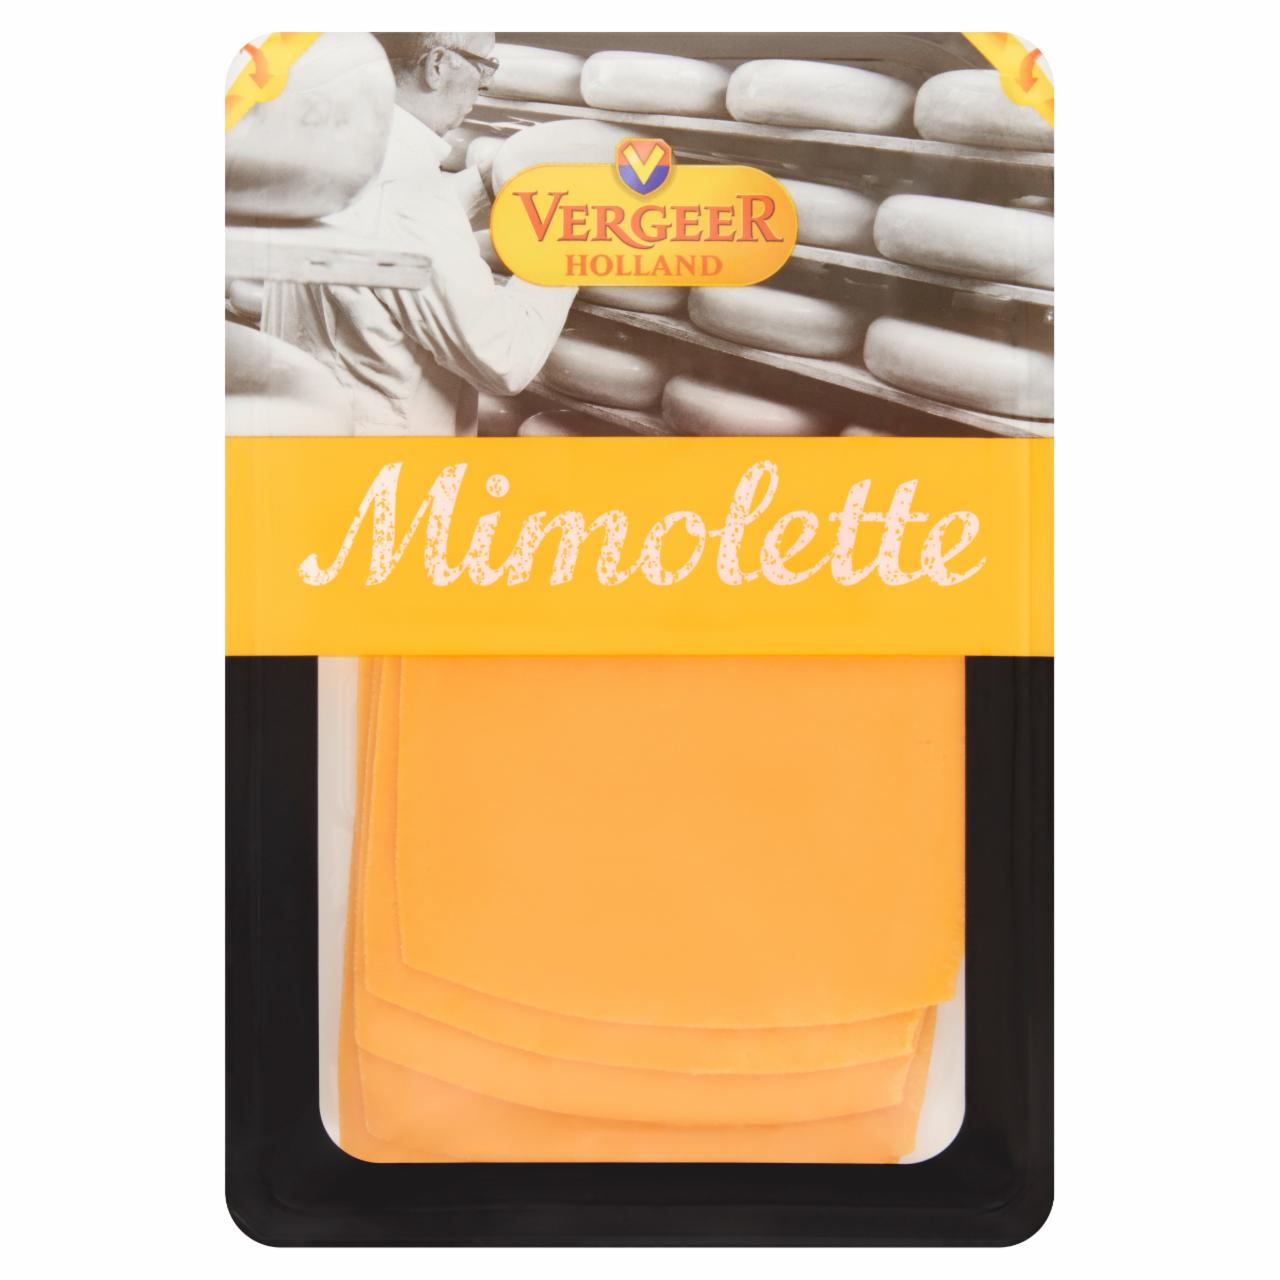 Képek - Vergeer Holland Mimolette félzsíros, félkemény, szeletelt holland sajt 100 g